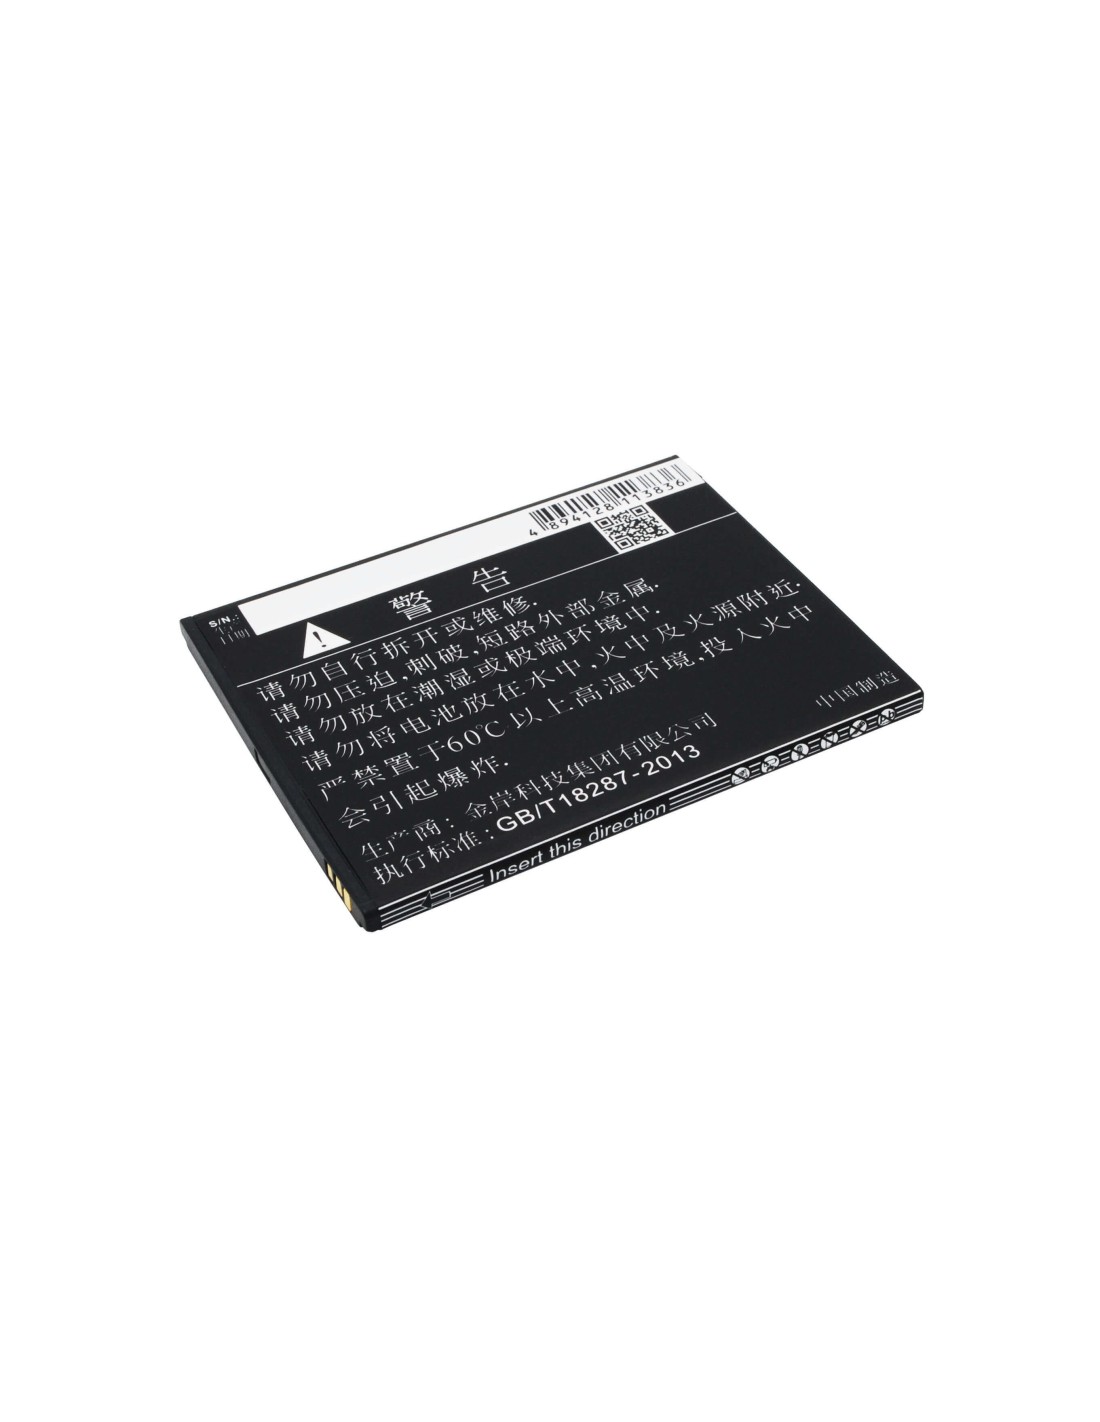 Battery for ZOPO ZP980, ZP980+, C2 3.7V, 1900mAh - 7.03Wh